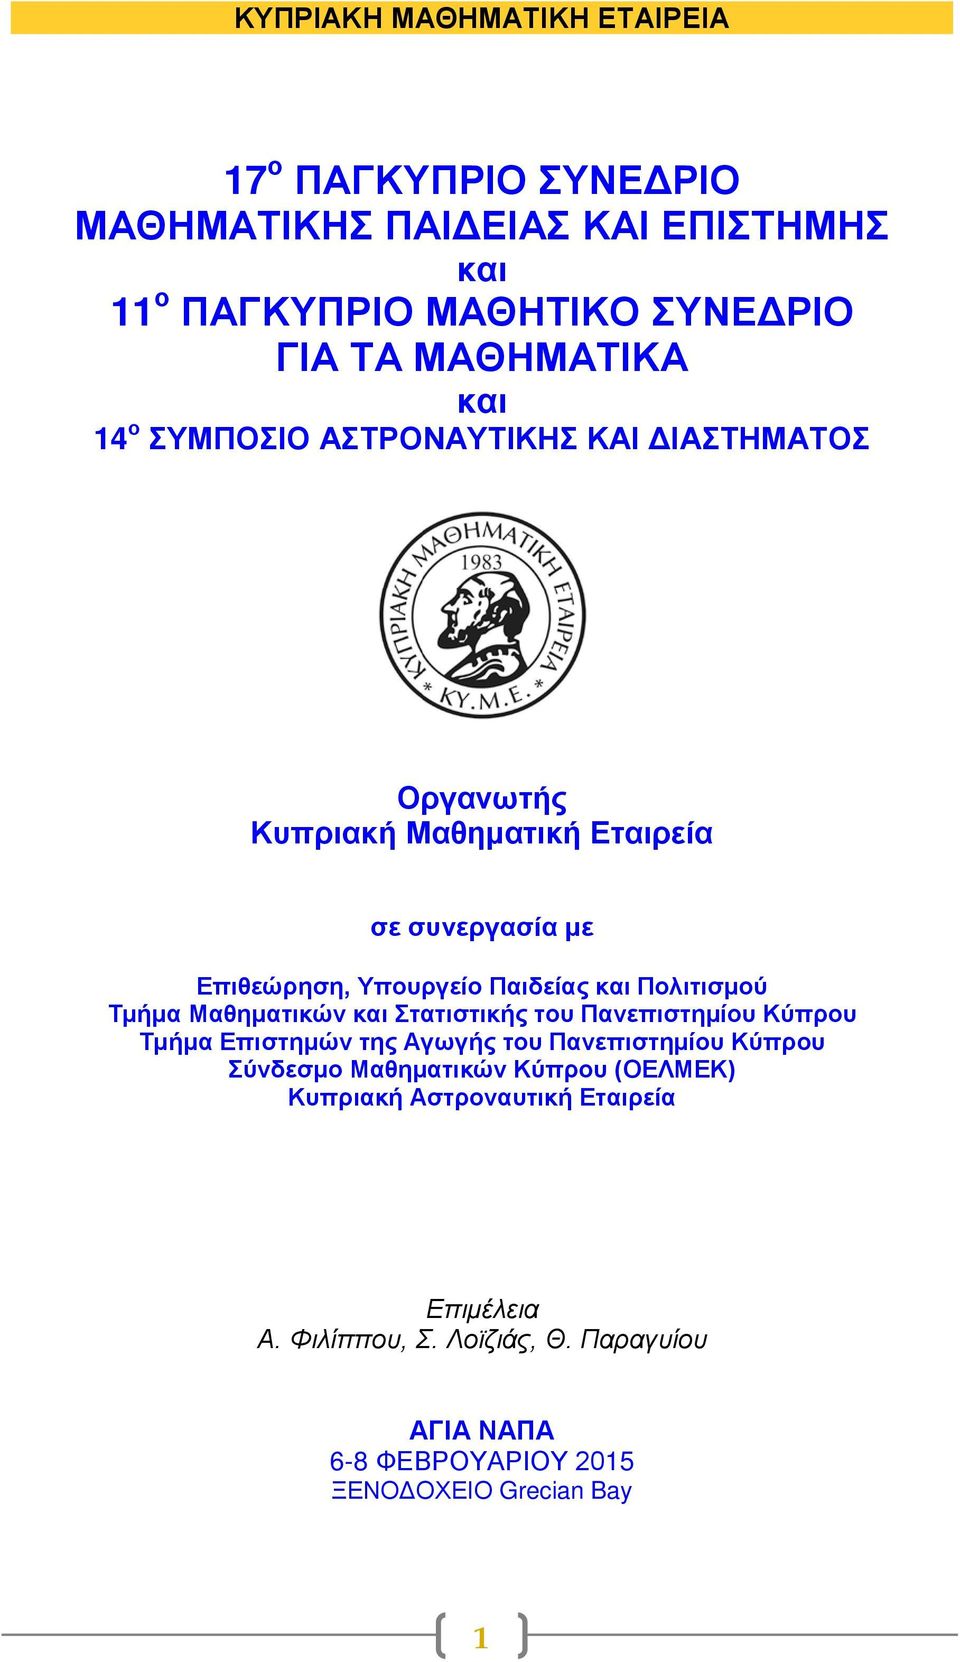 Τμήμα Μαθηματικών και Στατιστικής του Πανεπιστημίου Κύπρου Τμήμα Επιστημών της Αγωγής του Πανεπιστημίου Κύπρου Σύνδεσμο Μαθηματικών